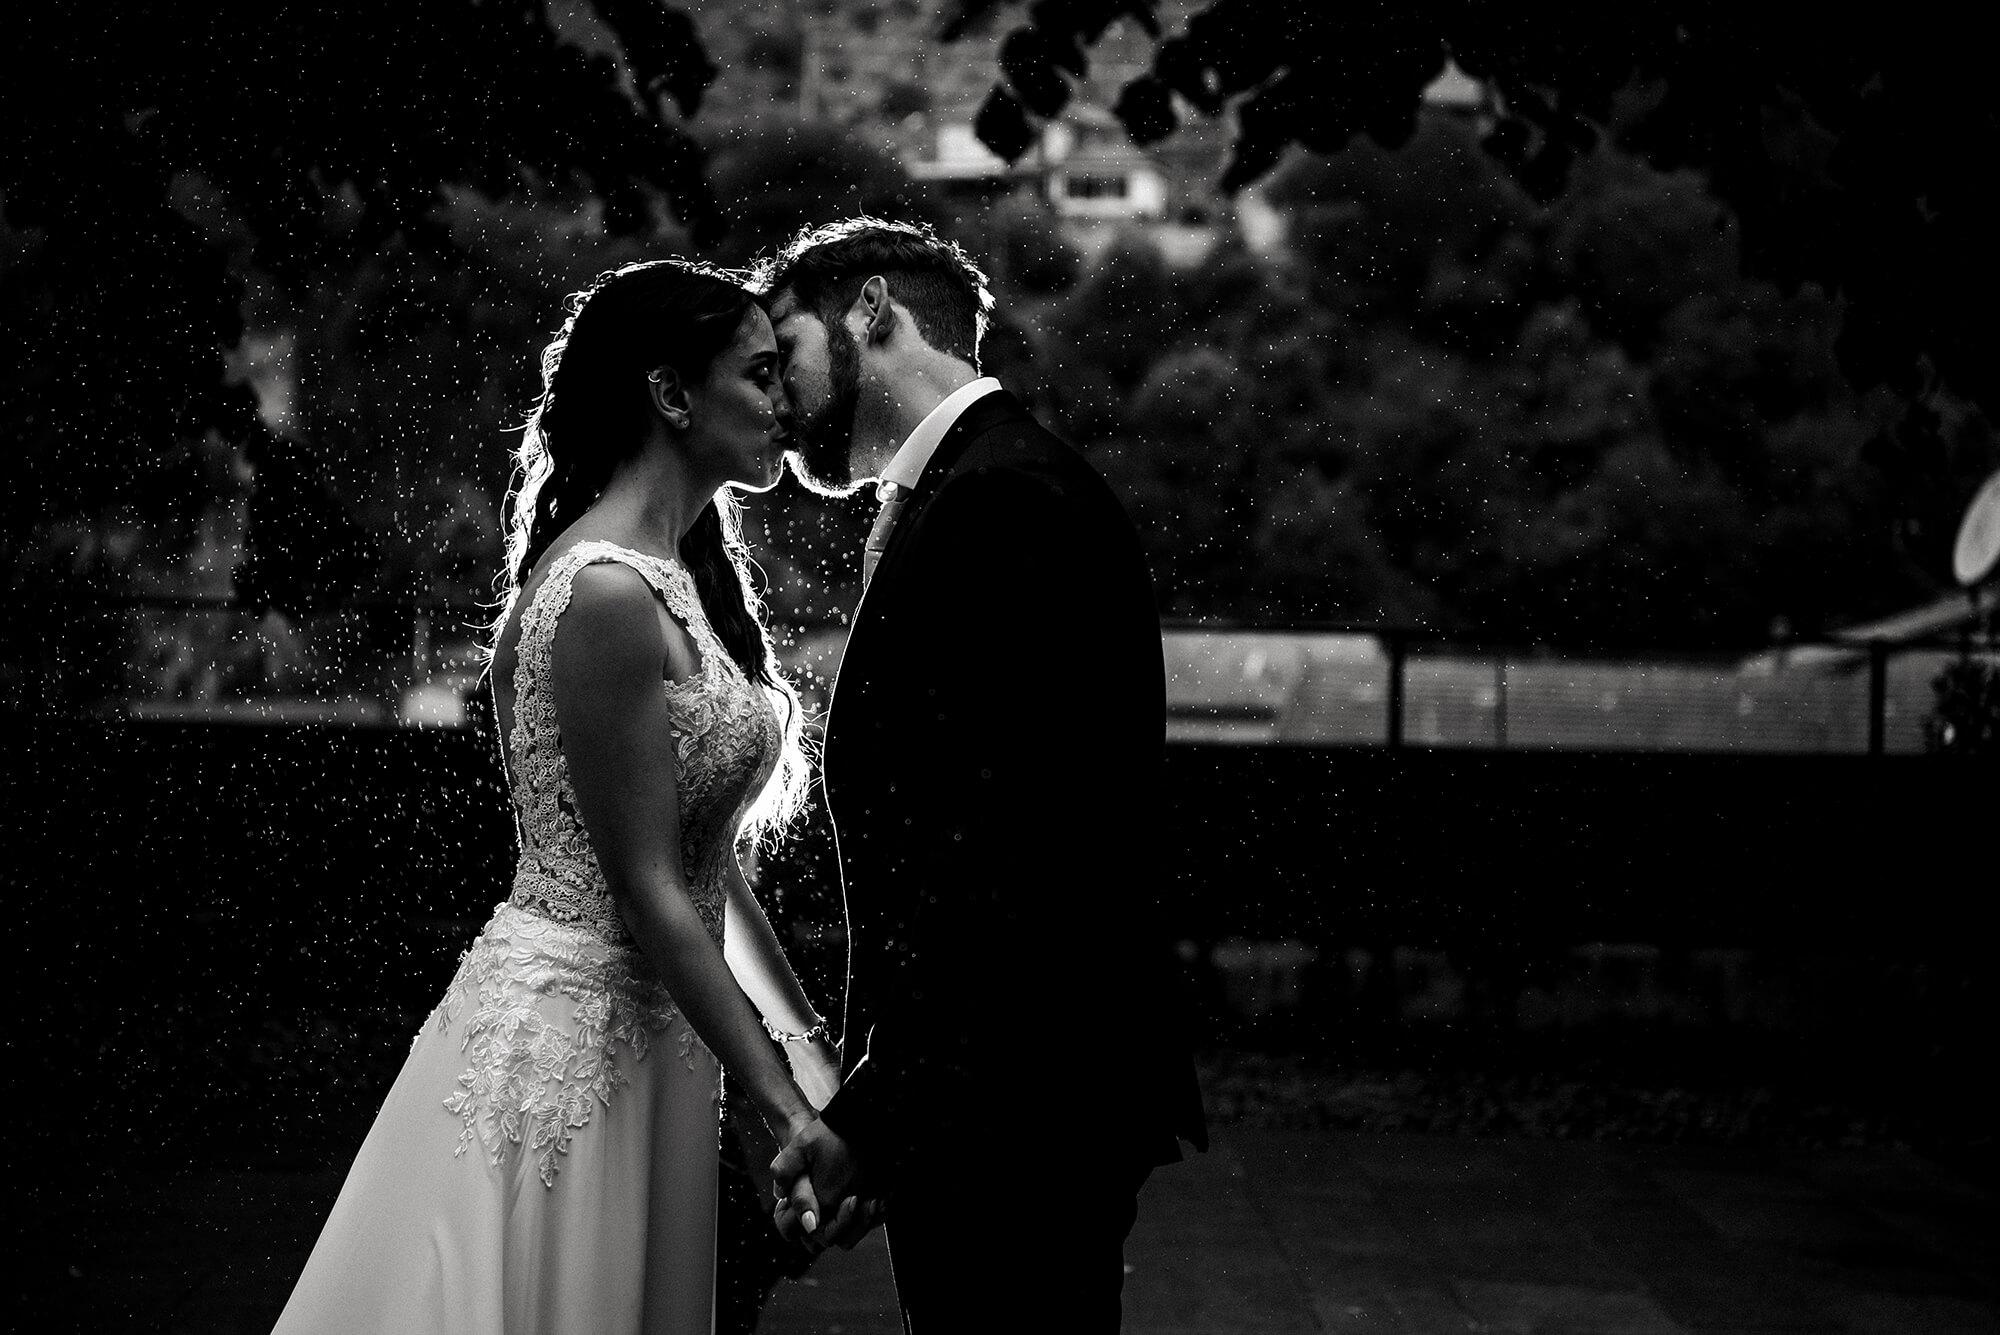 Ci è capitato spesso di fotografare un matrimonio con la pioggia, quando succede la prendiamo con filosofia e cerchiamo di realizzare delle belle foto.